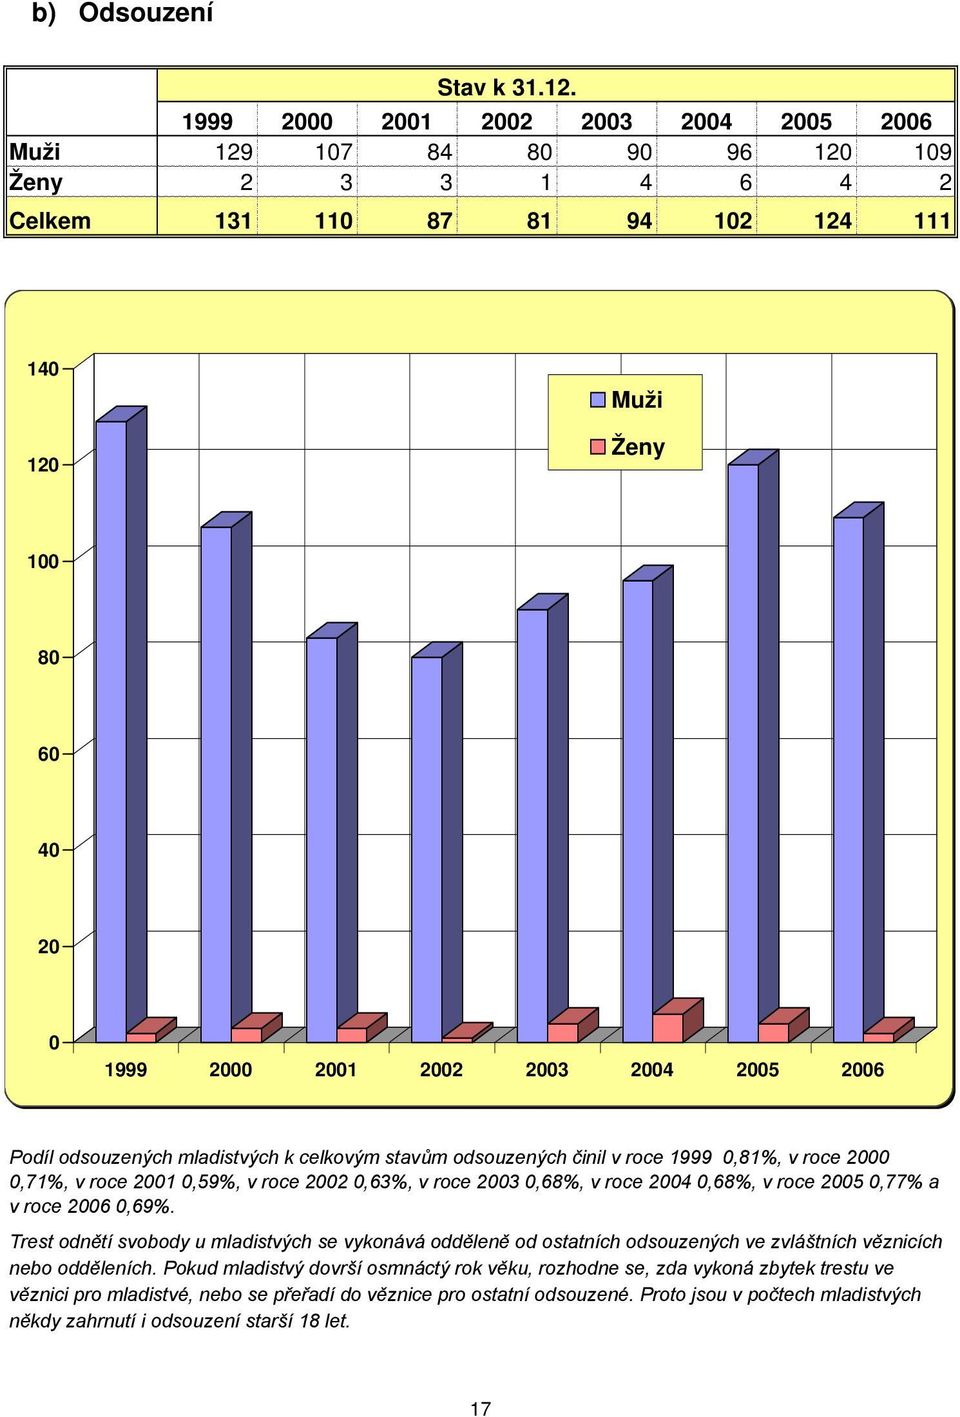 2005 2006 Podíl odsouzených mladistvých k celkovým stavům odsouzených činil v roce 1999 0,81%, v roce 2000 0,71%, v roce 2001 0,59%, v roce 2002 0,63%, v roce 2003 0,68%, v roce 2004 0,68%, v roce